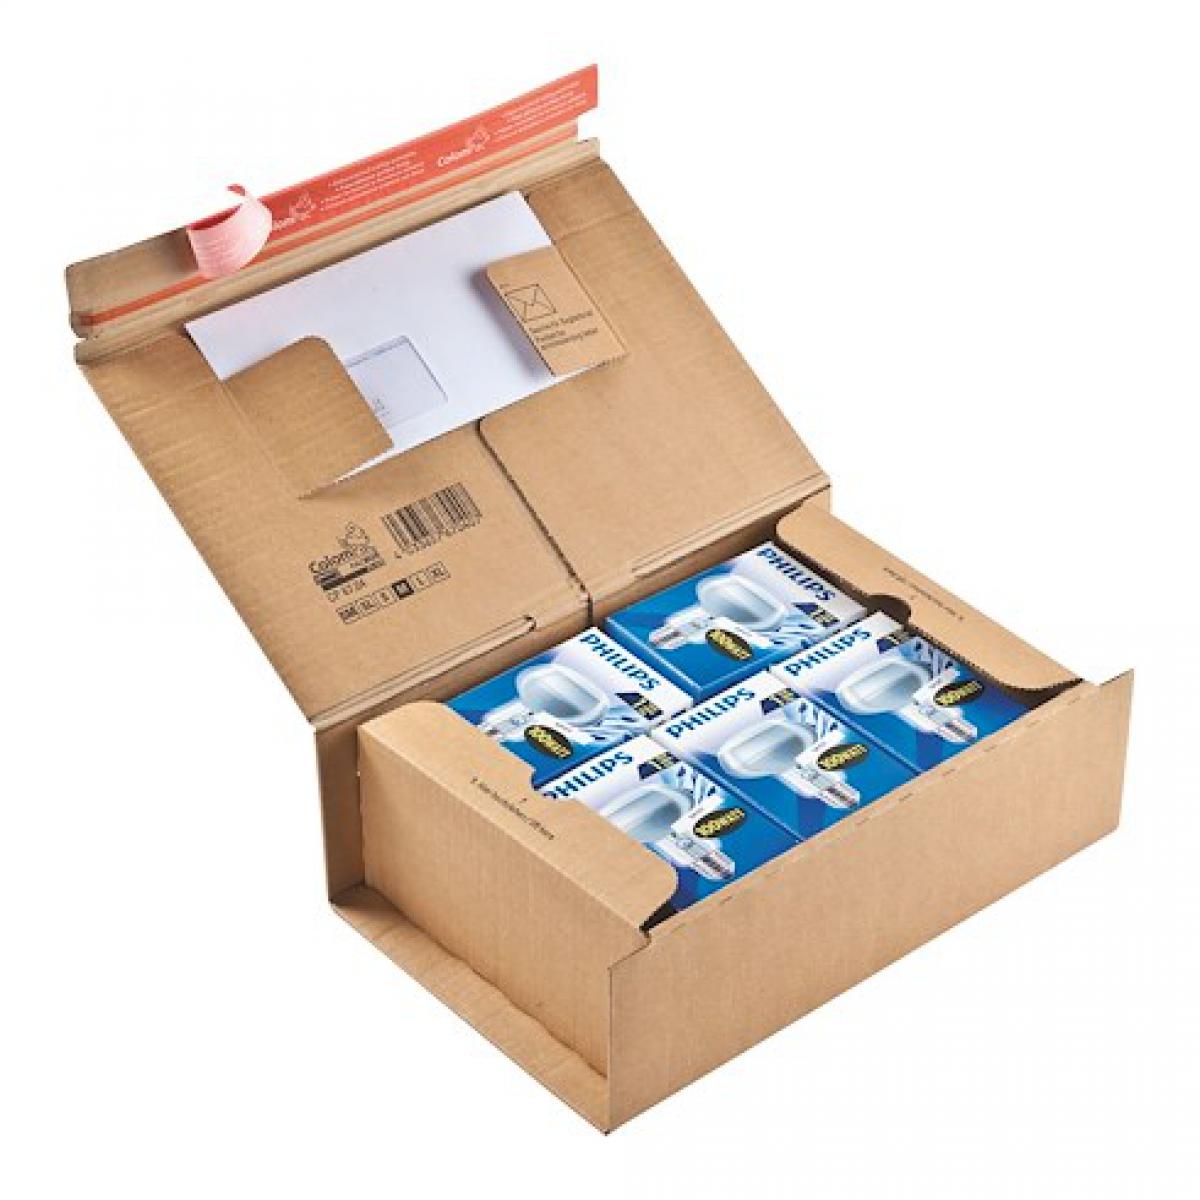 Colompac - Boite postale carton 30,5 x 21,2 x 11 cm - Lot de 10 - Accessoires Bureau